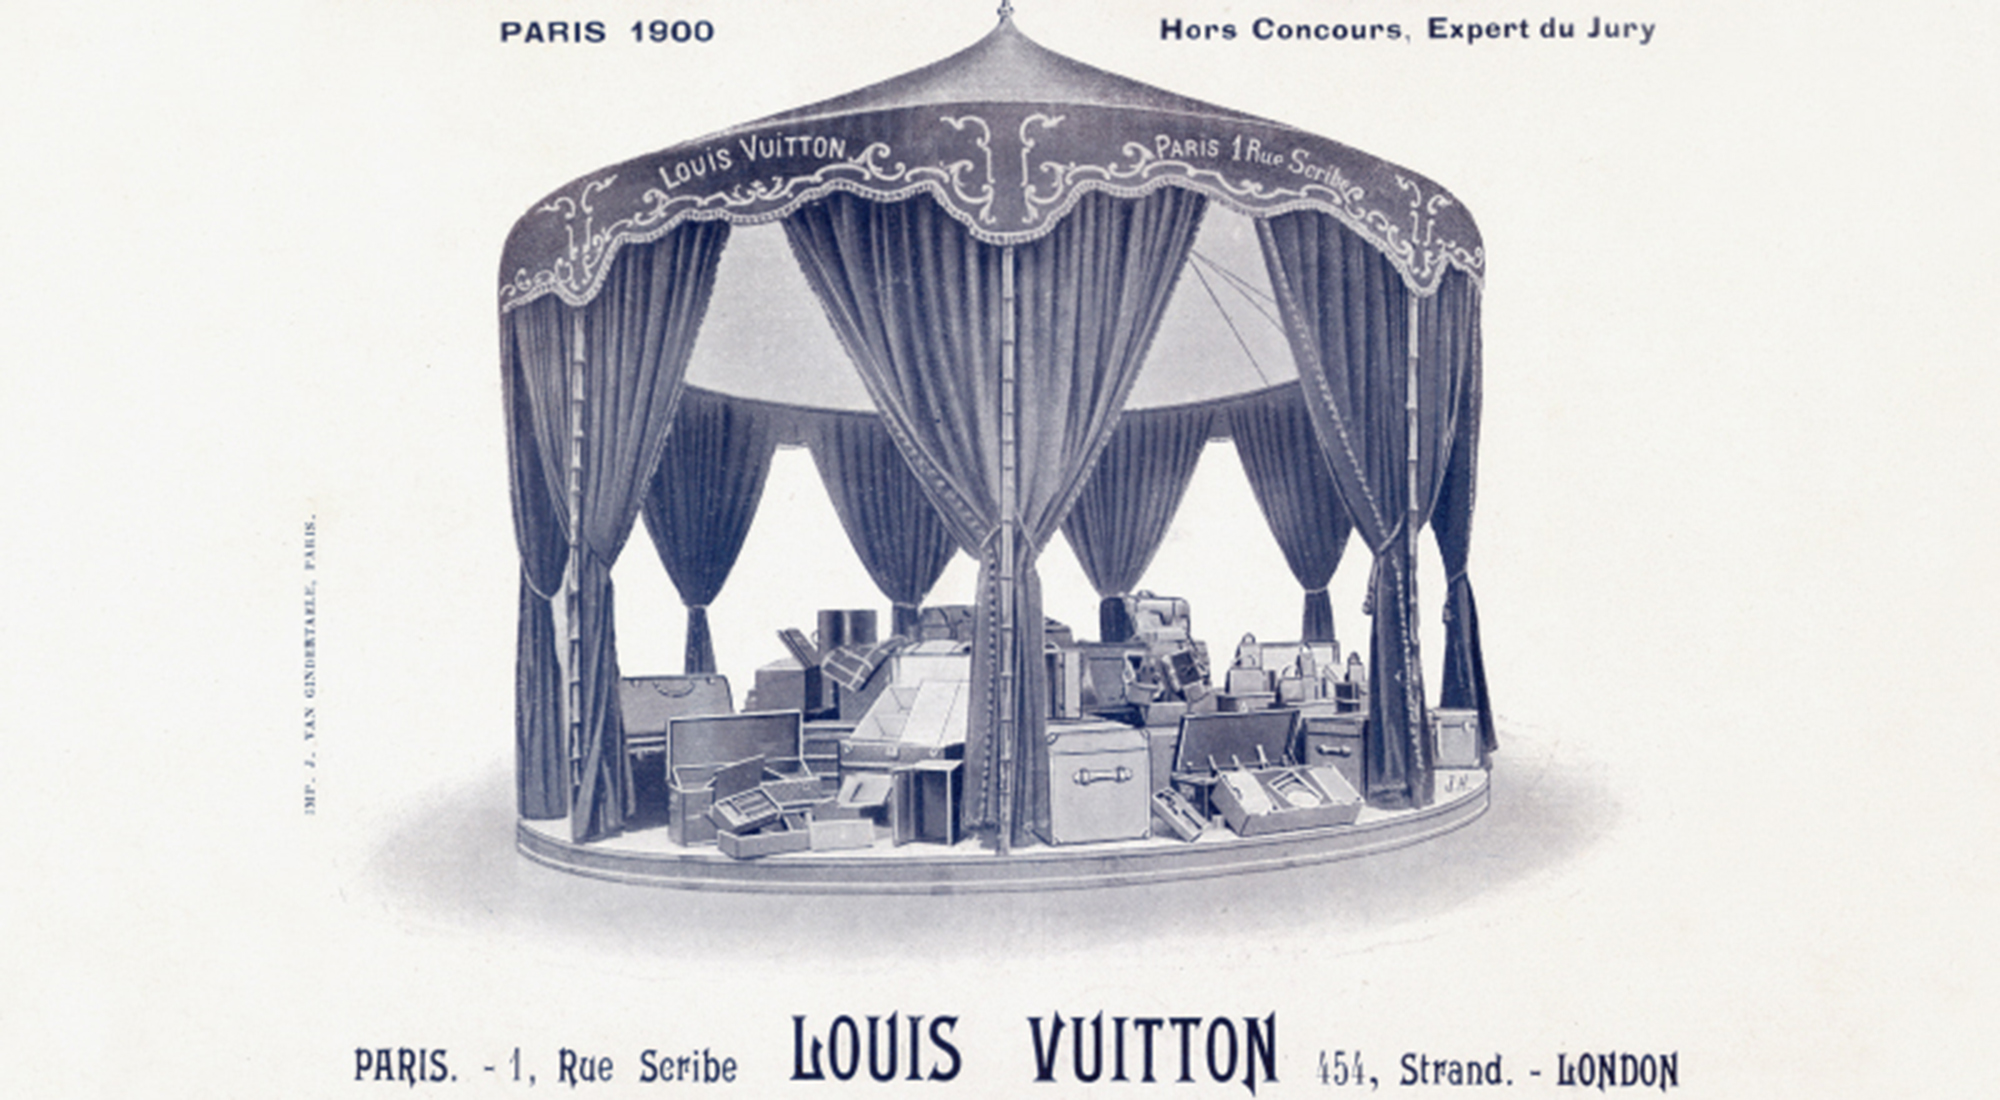 Louis Vuitton - Volez, Voguez, Voyagez Exhibition - Shanghai -  Exhibitions - Brand Exhibitions - Fashion - Culture & Institutions - La  Mode en Images